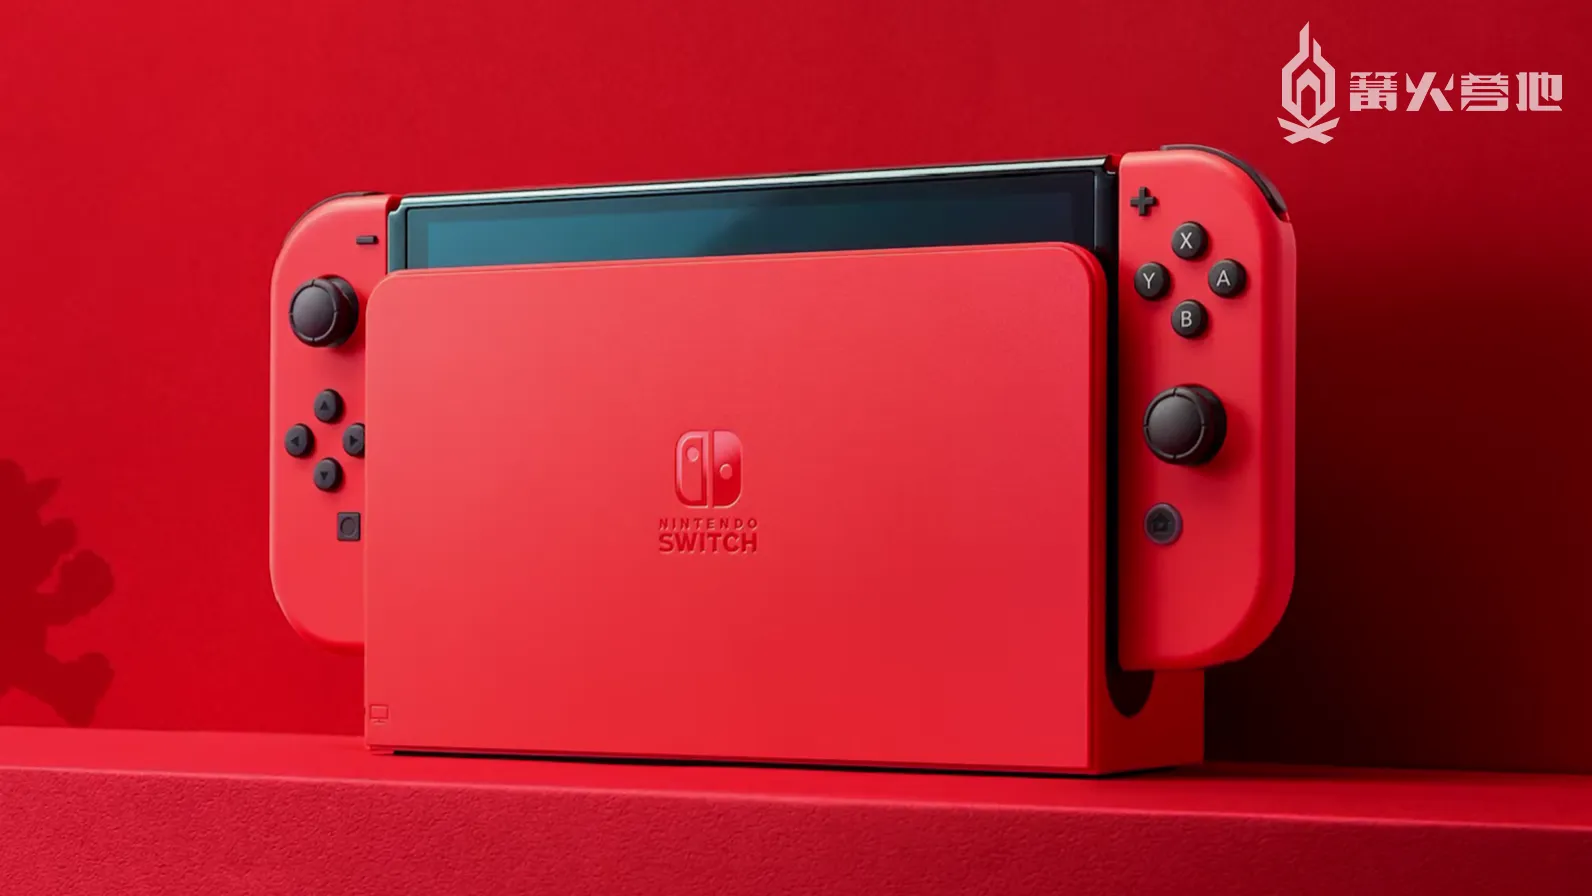 任天堂將在本財年內公開 Nintendo Switch 的後繼產品